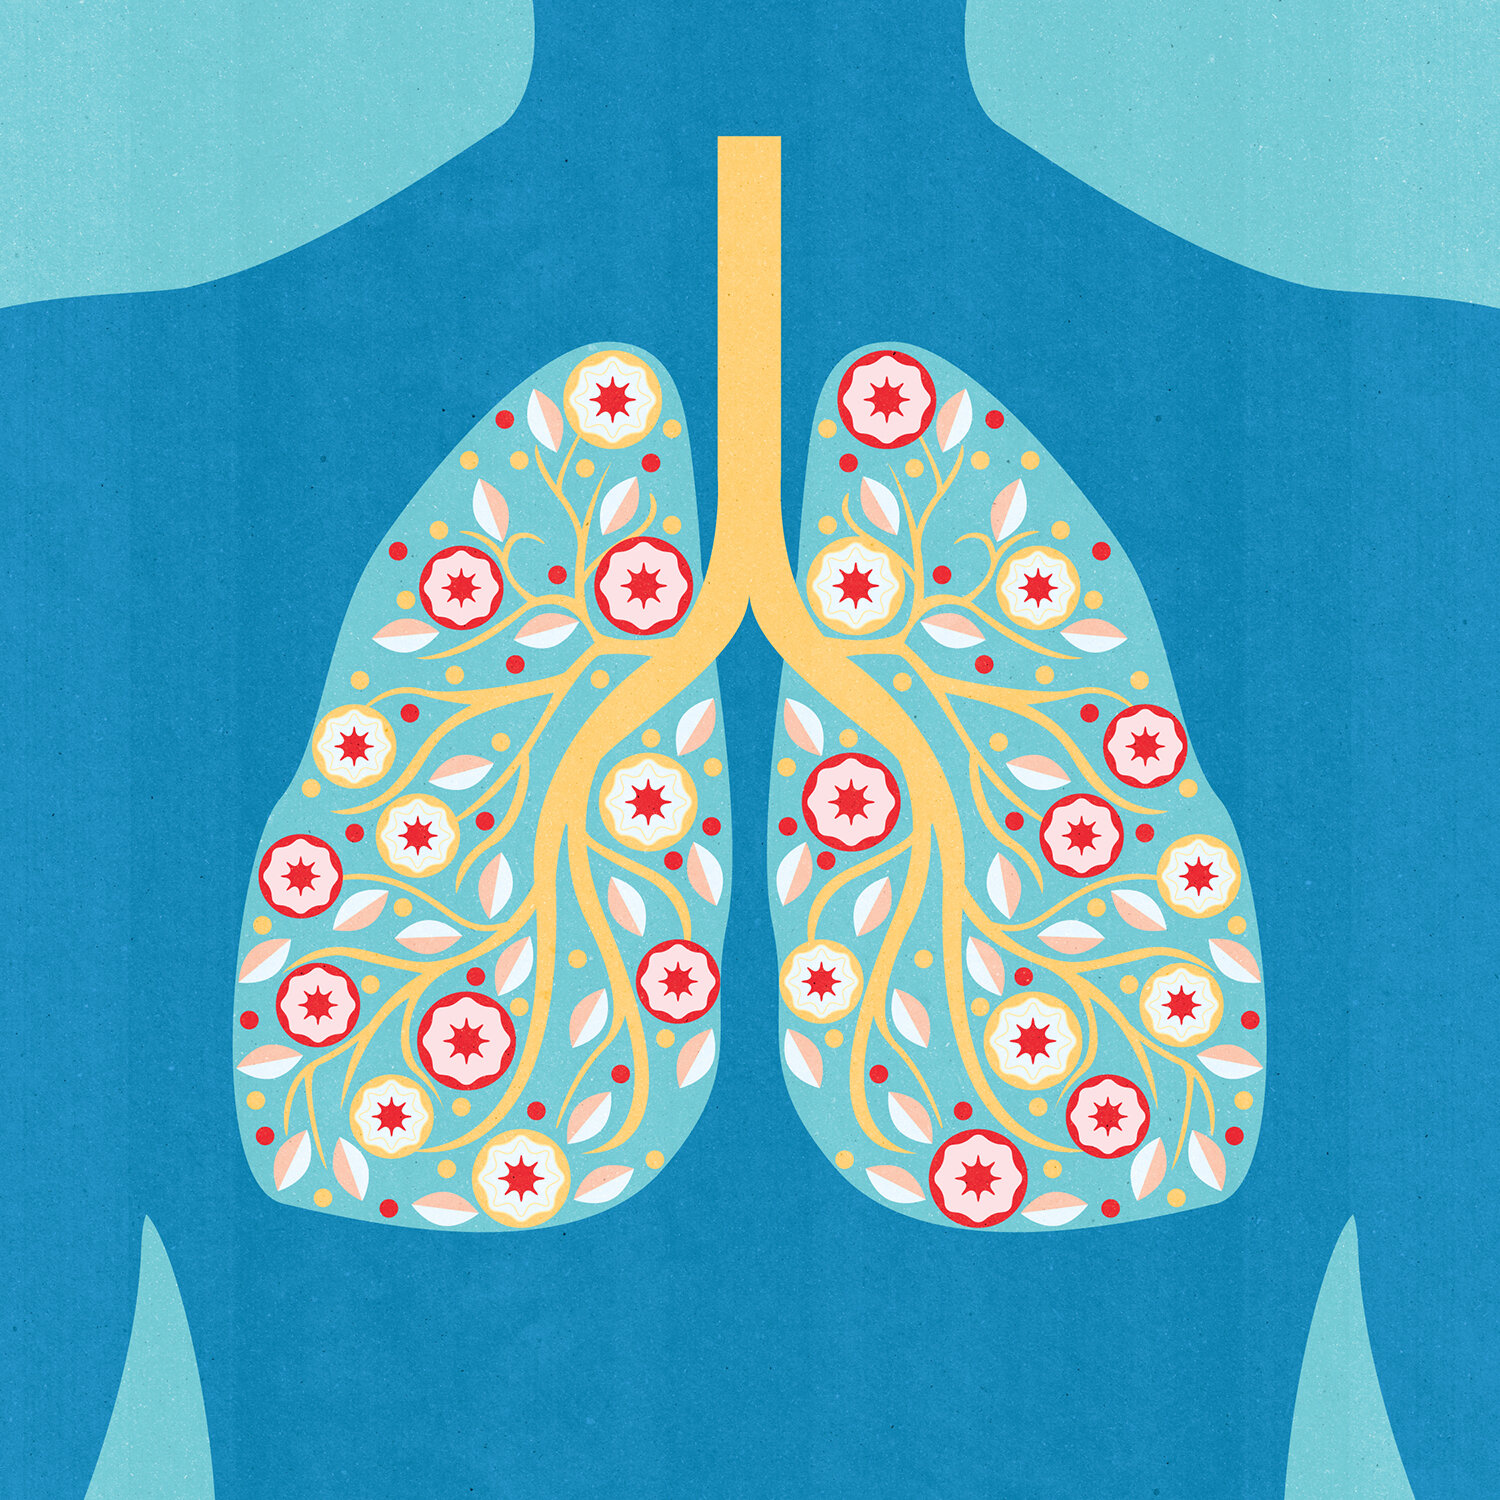 Asthma Allergies 15 x 15 in_textures RGB 1500.jpg